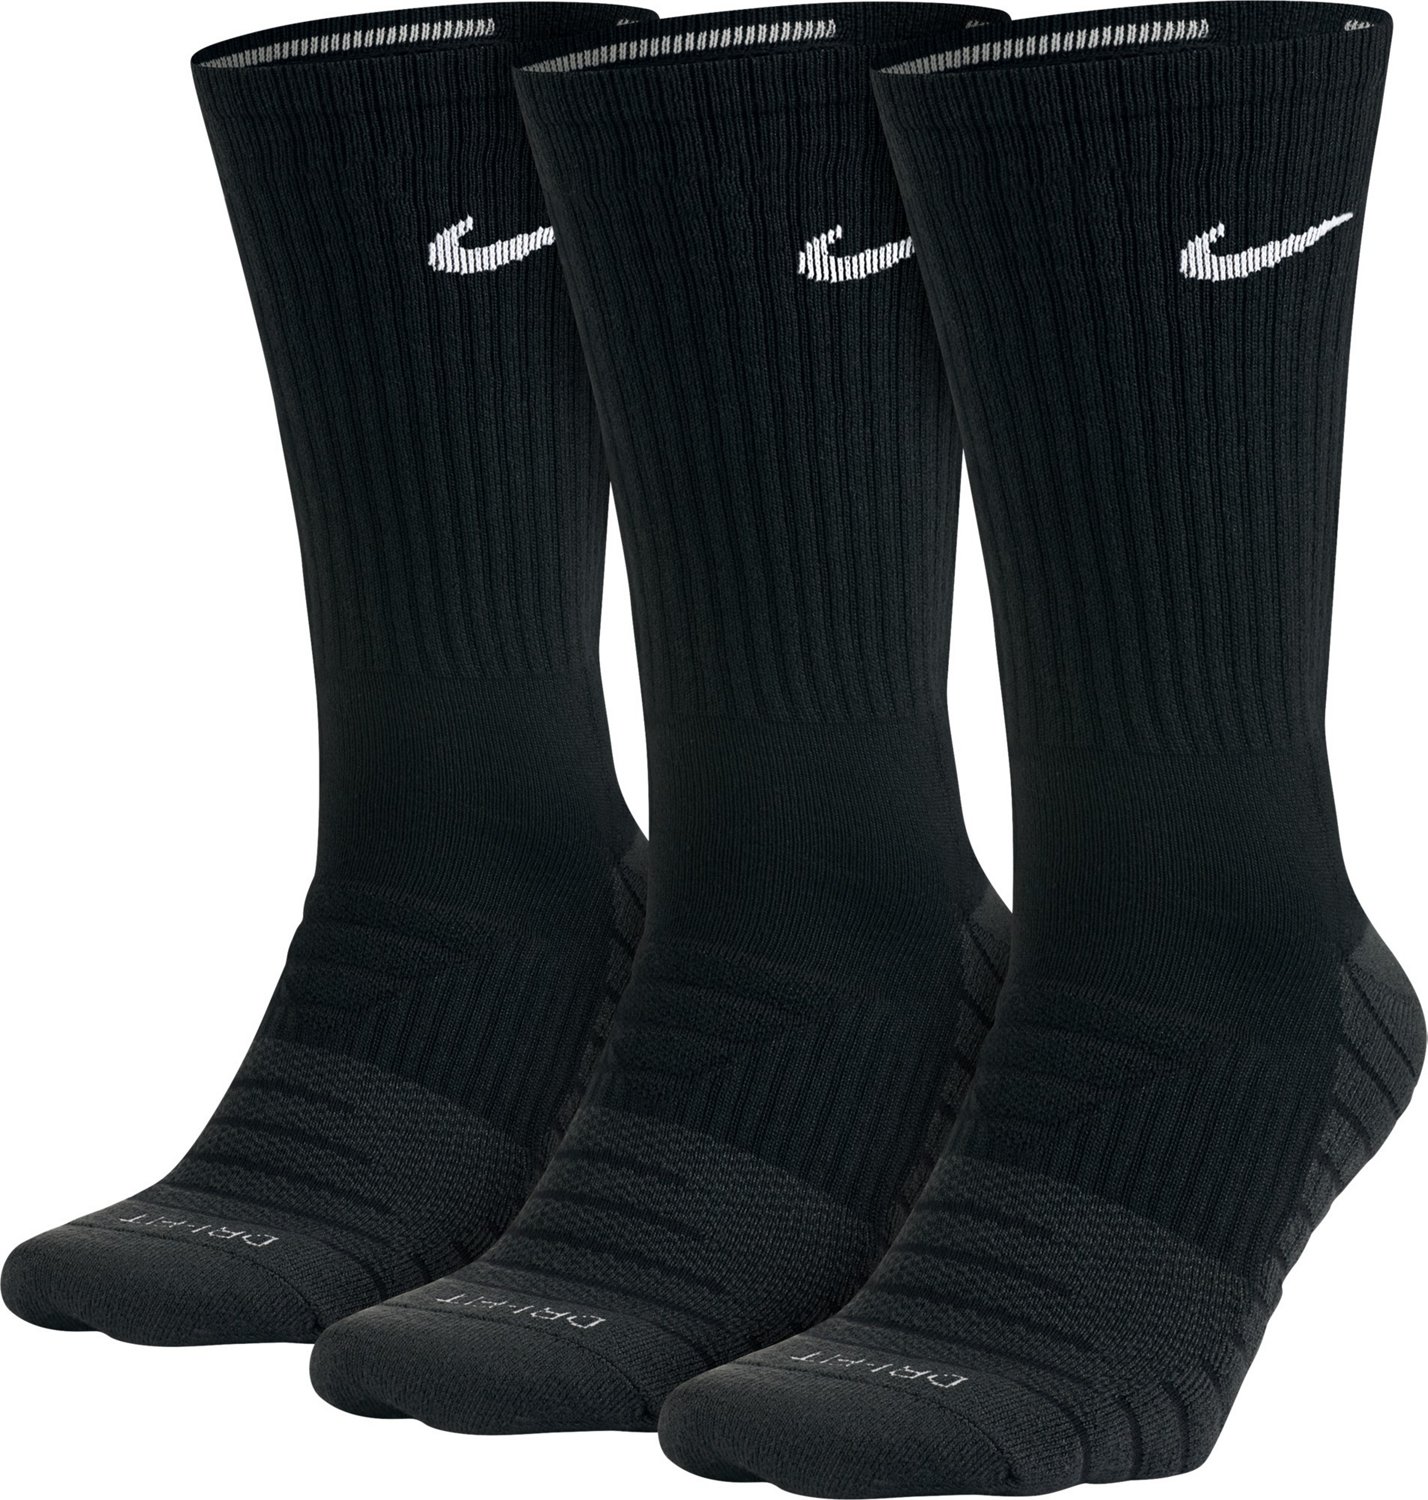 academy sports nike socks